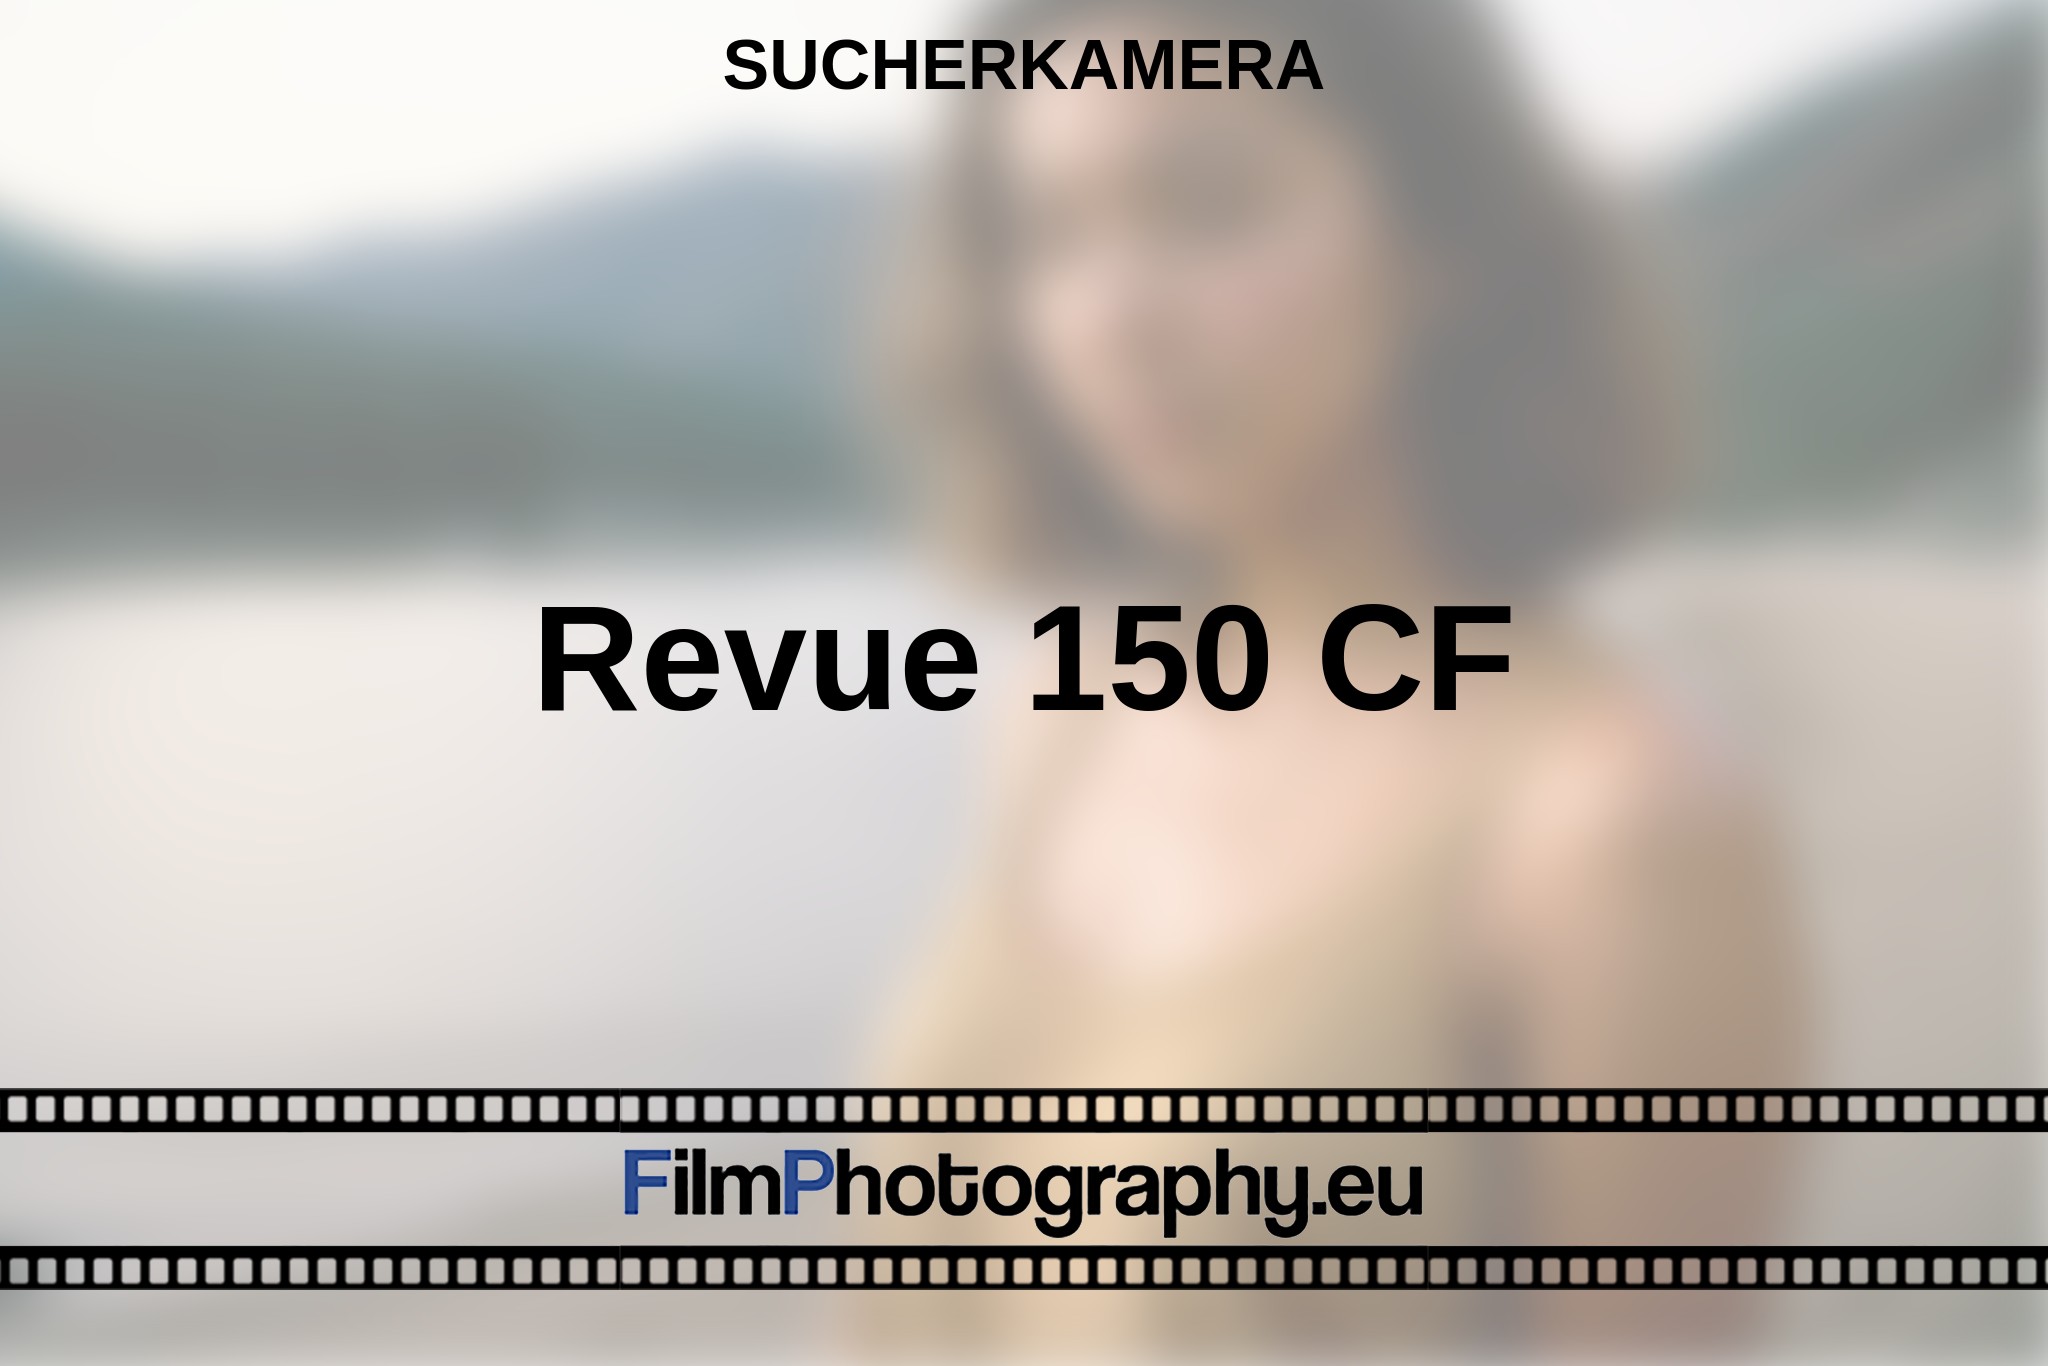 revue-150-cf-sucherkamera-bnv.jpg